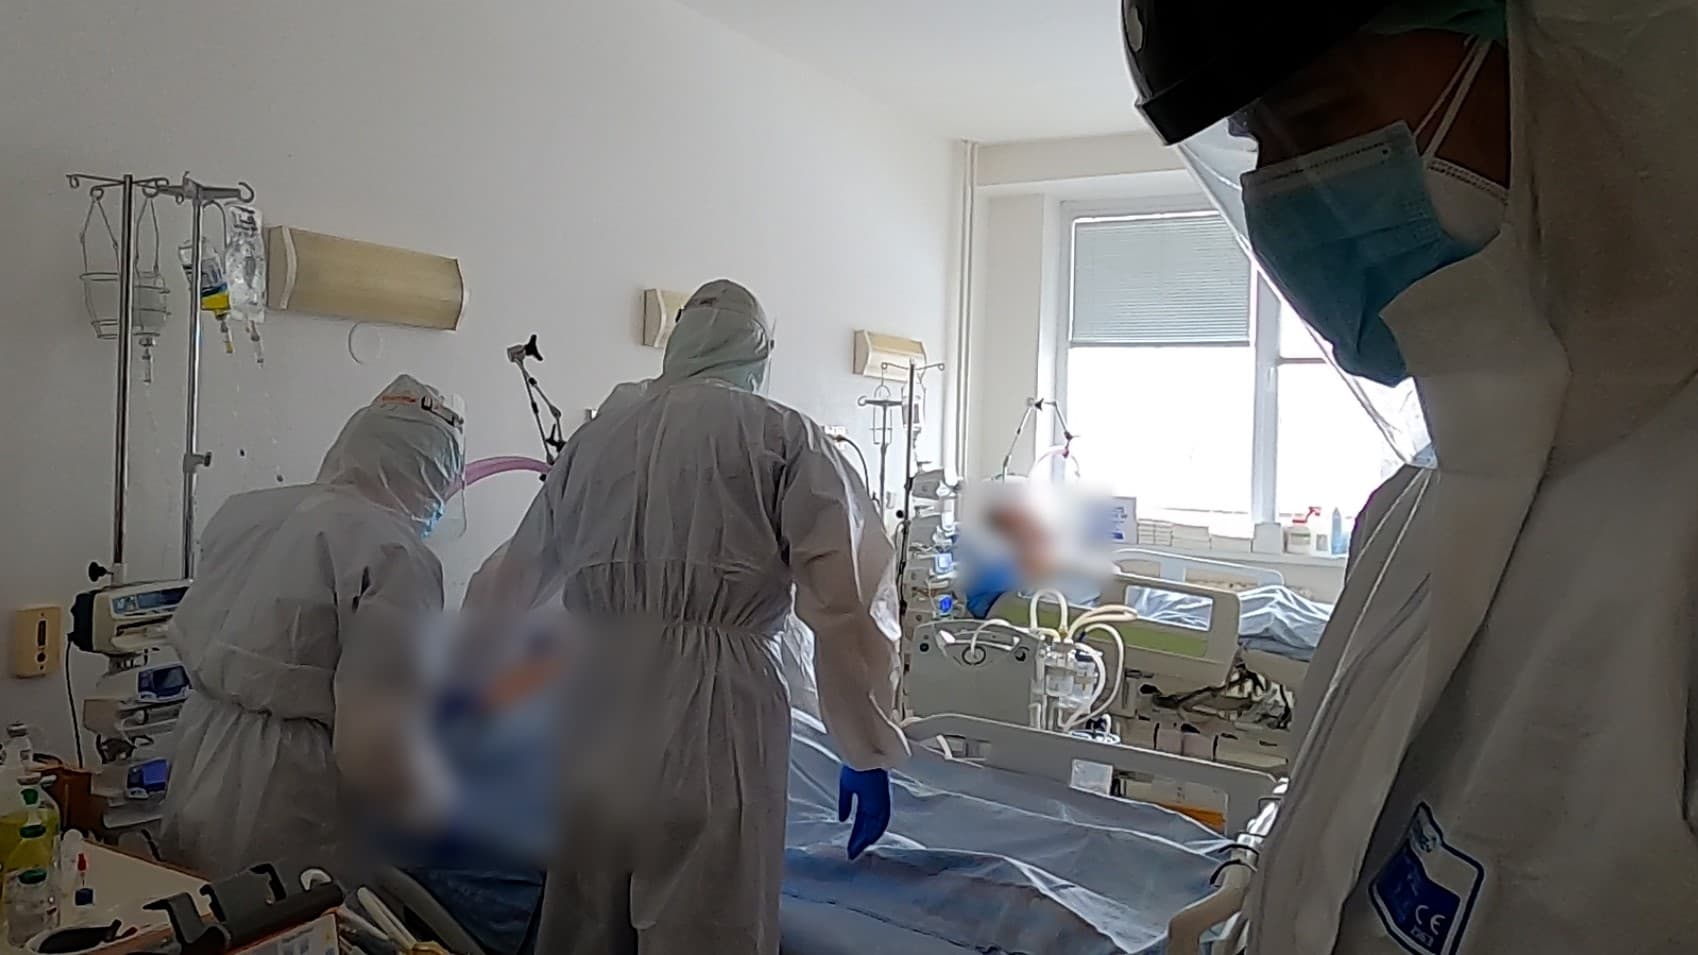 "NEM AKARNÉK MEGHALNI MÉG" - Harc a COVID-19 ellen a dunaszerdahelyi kórházban (VIDEÓ)